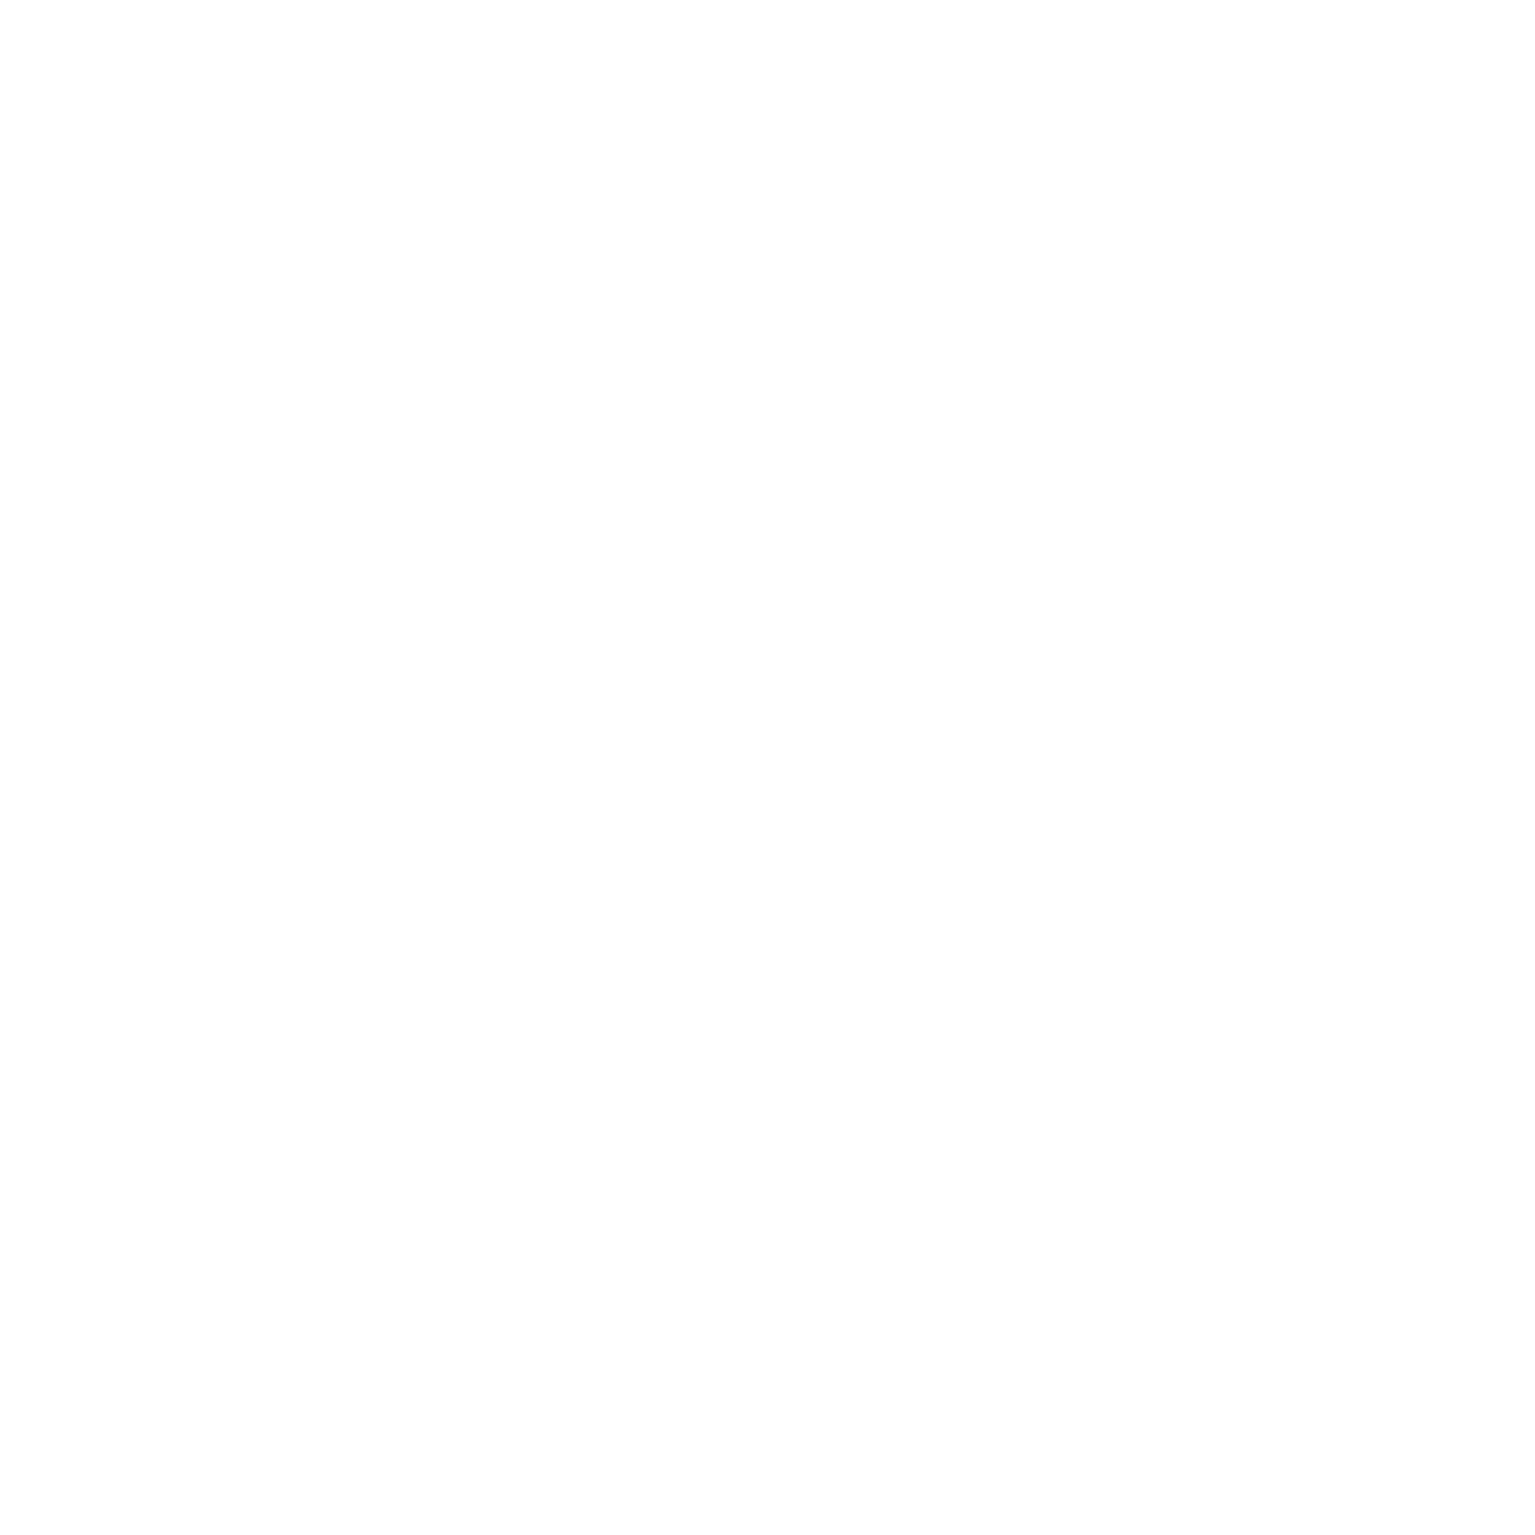 Istituto ad Ordinamento Universitario “Scuola Superiore Carolina Albasio”